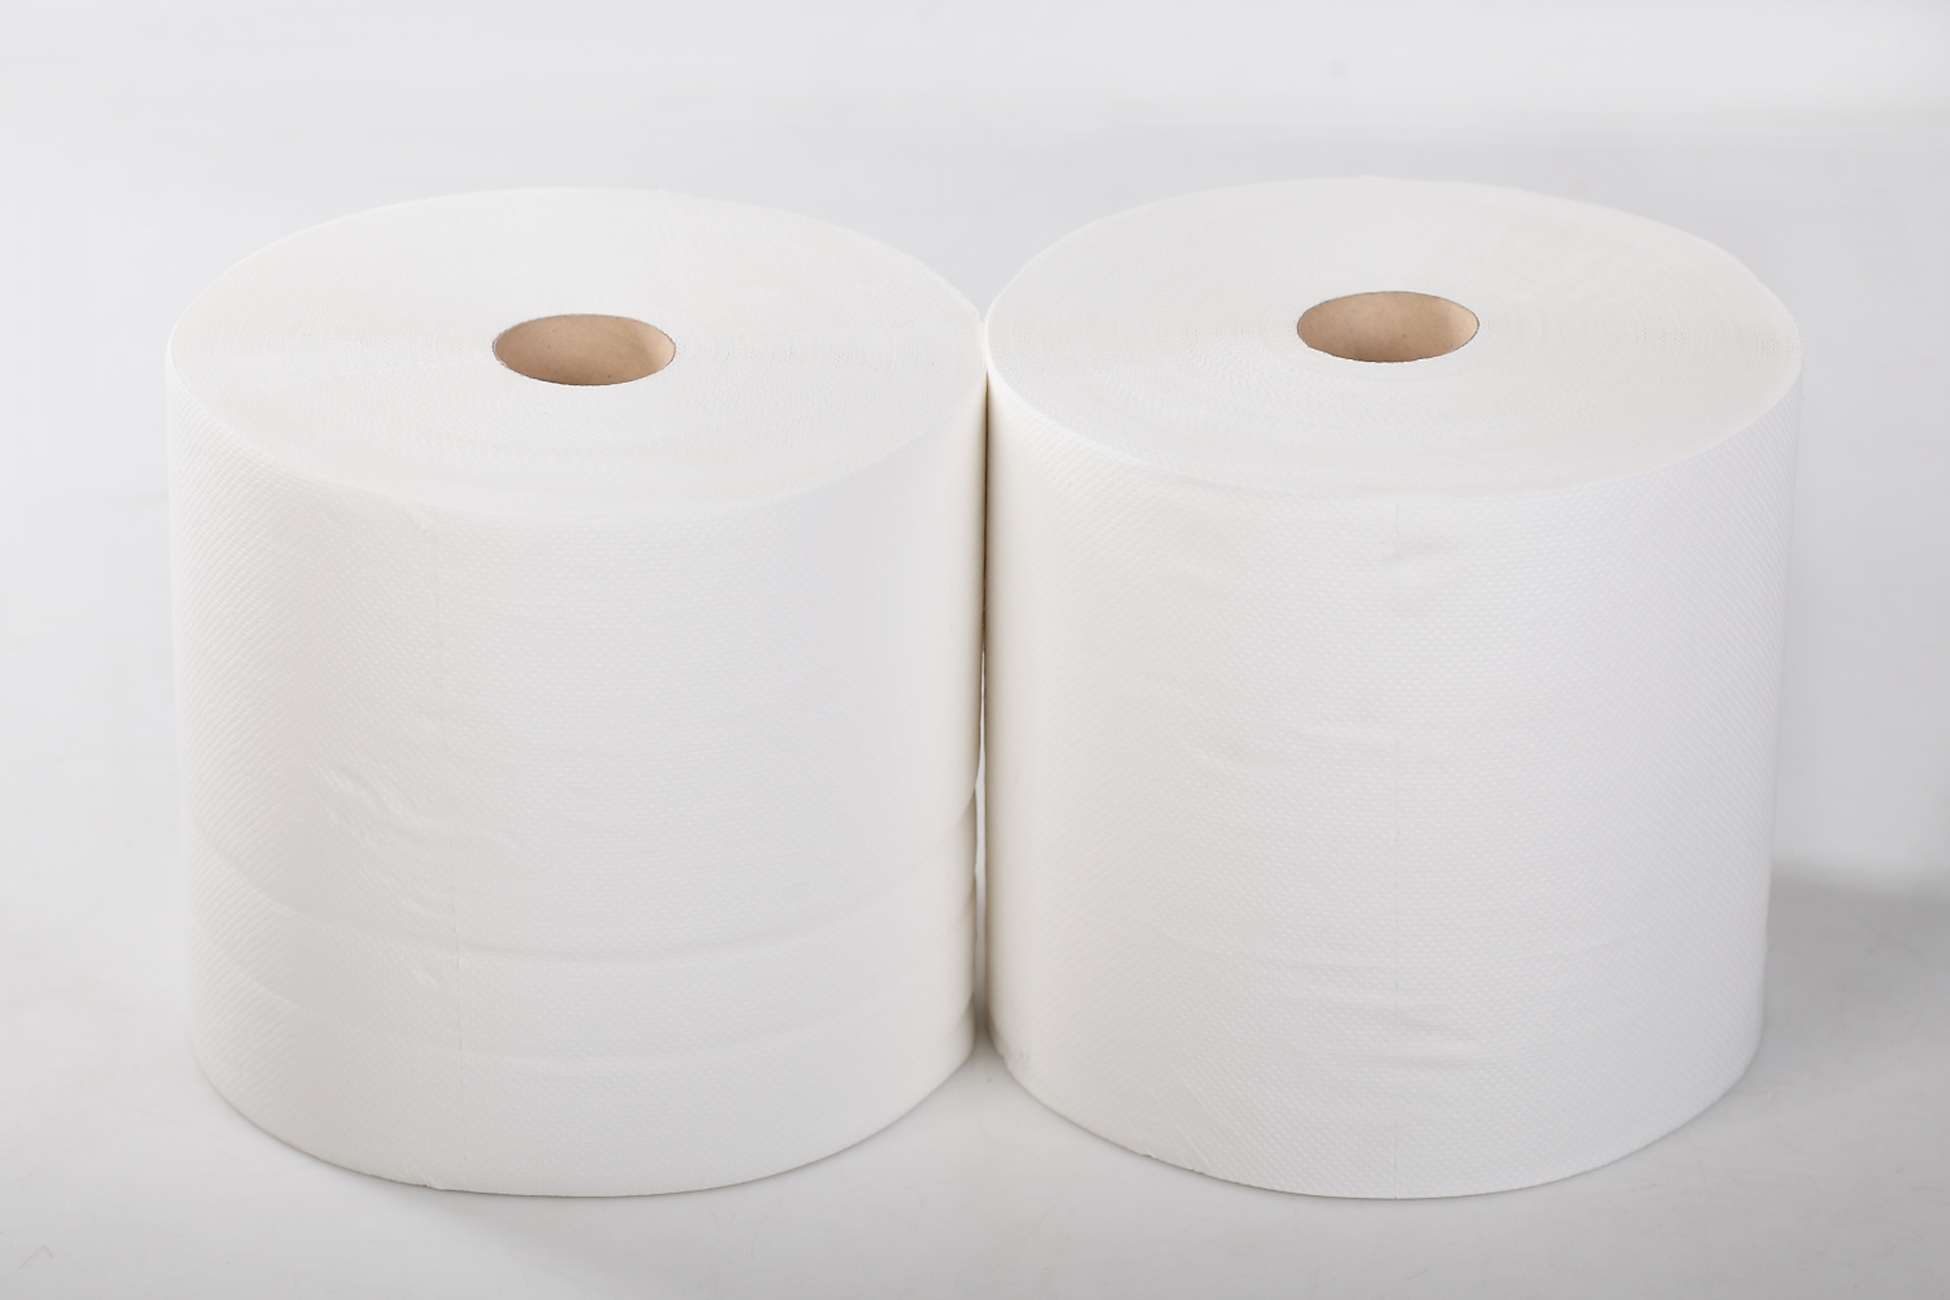 Бумажные полотенца 100 целлюлоза. Бумажные полотенца в рулонах. Полотенце бумажные рулон 200 метров. Рулон бумажных полотенец 1000 листов. Метровая бумага.